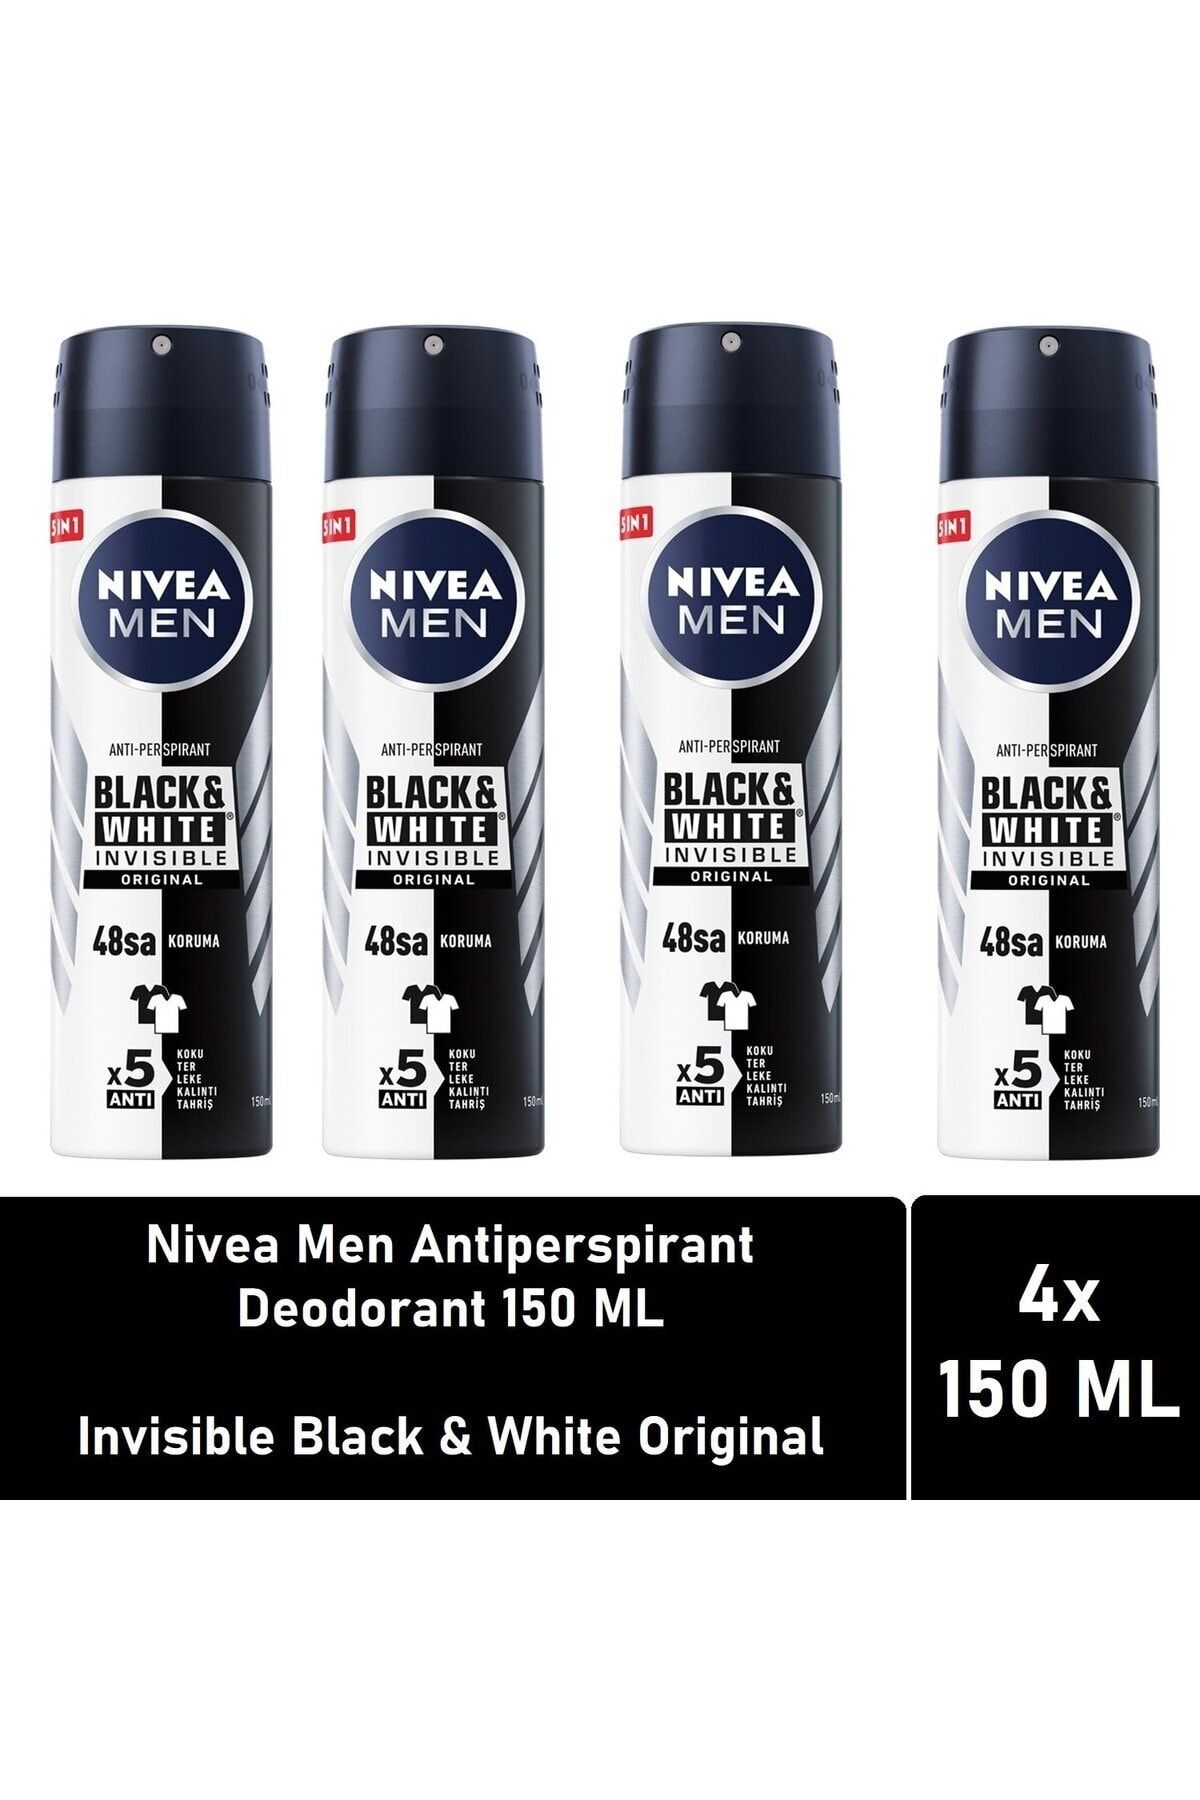 NIVEA ضدعرق مردانه مخفی سیاه و سفید اصل 150 میلی لیتر بسته 4 تایی با مزیت